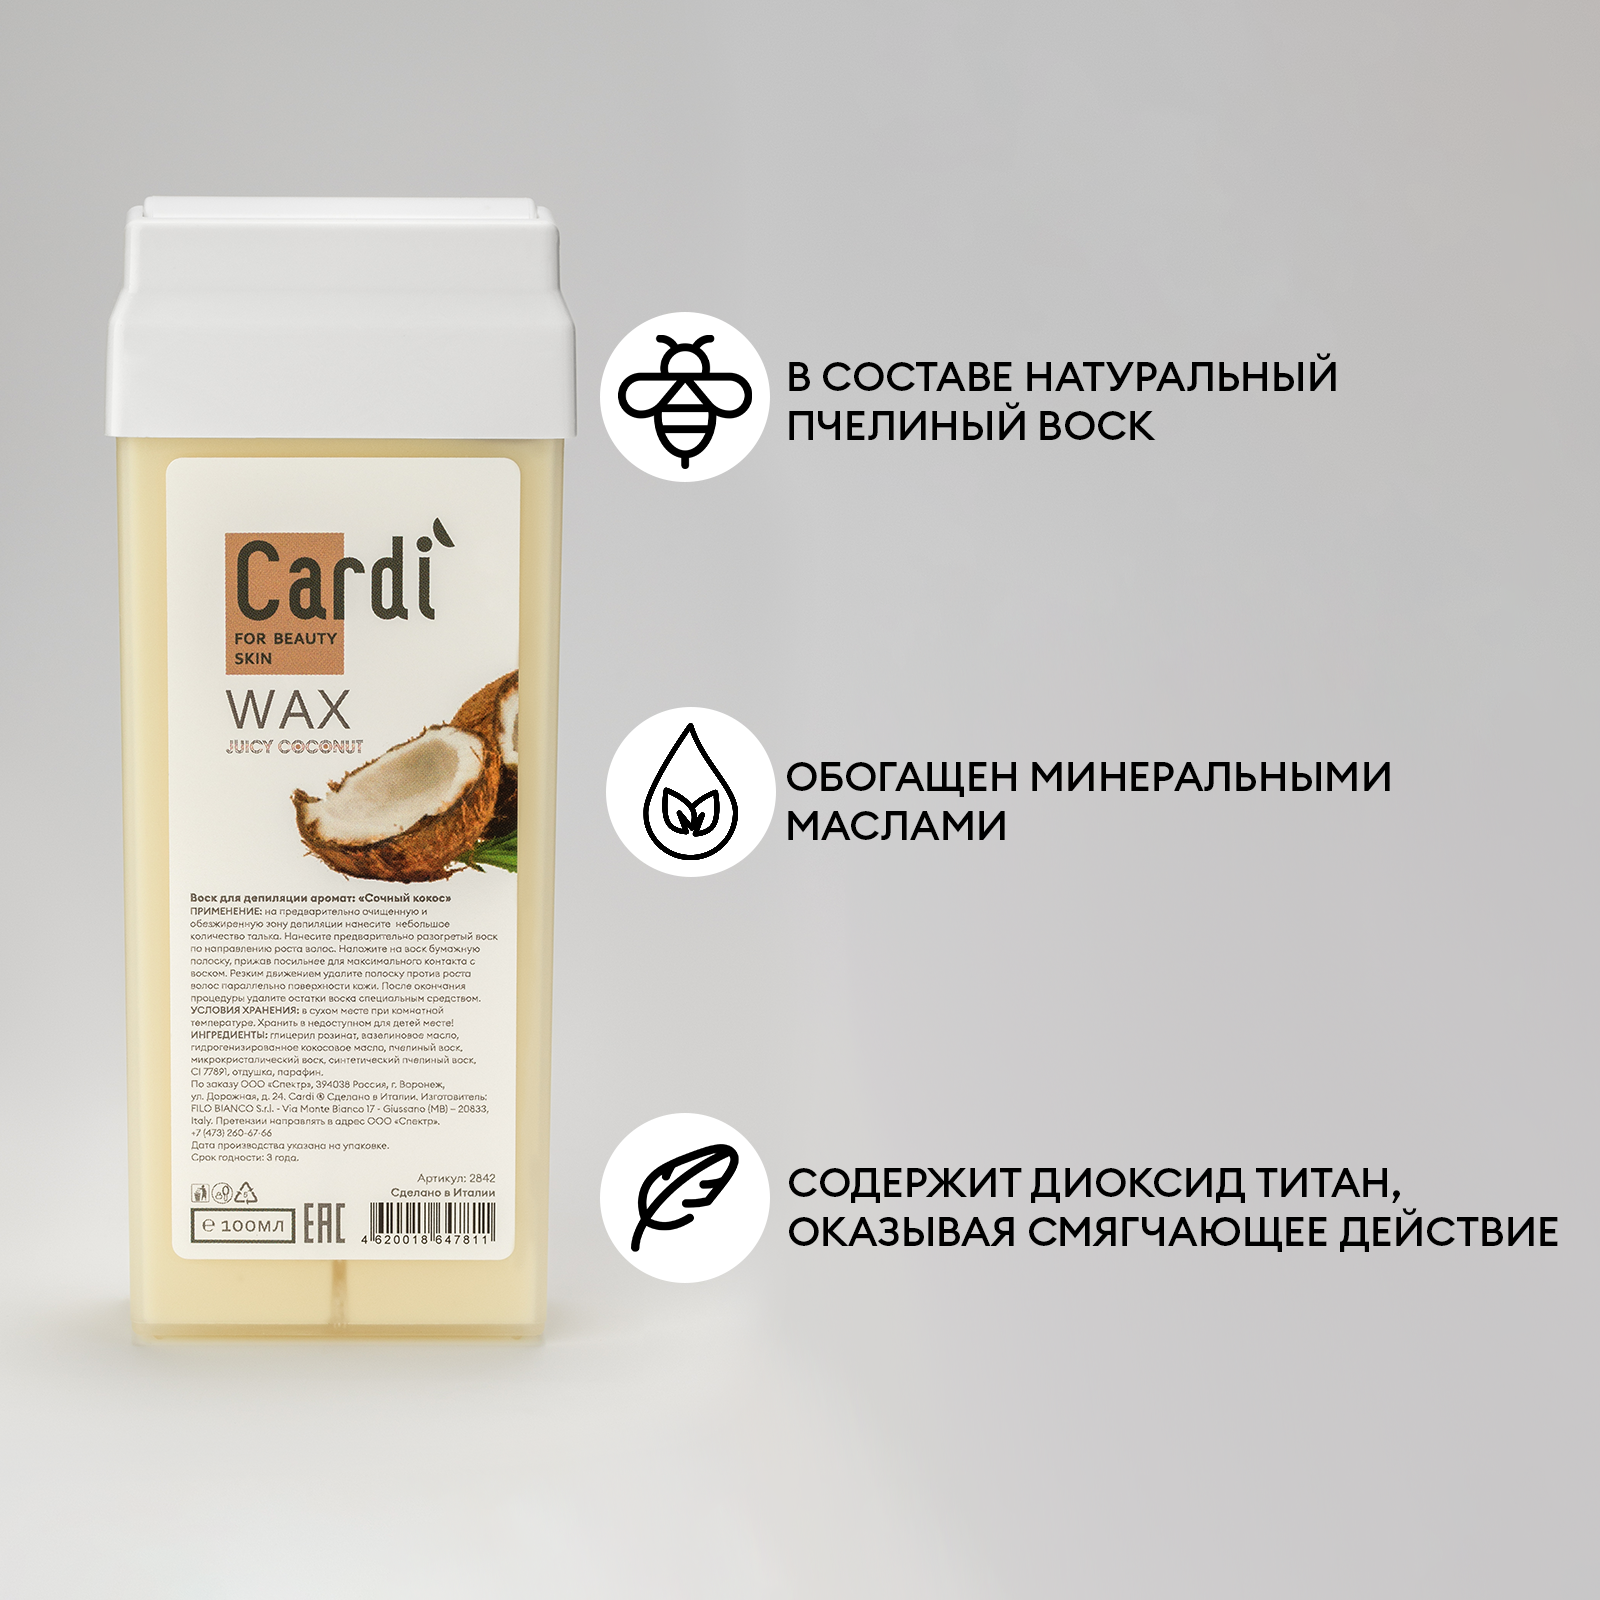 Воск для депиляции Cardi (аромат: Сочный кокос), 100 мл